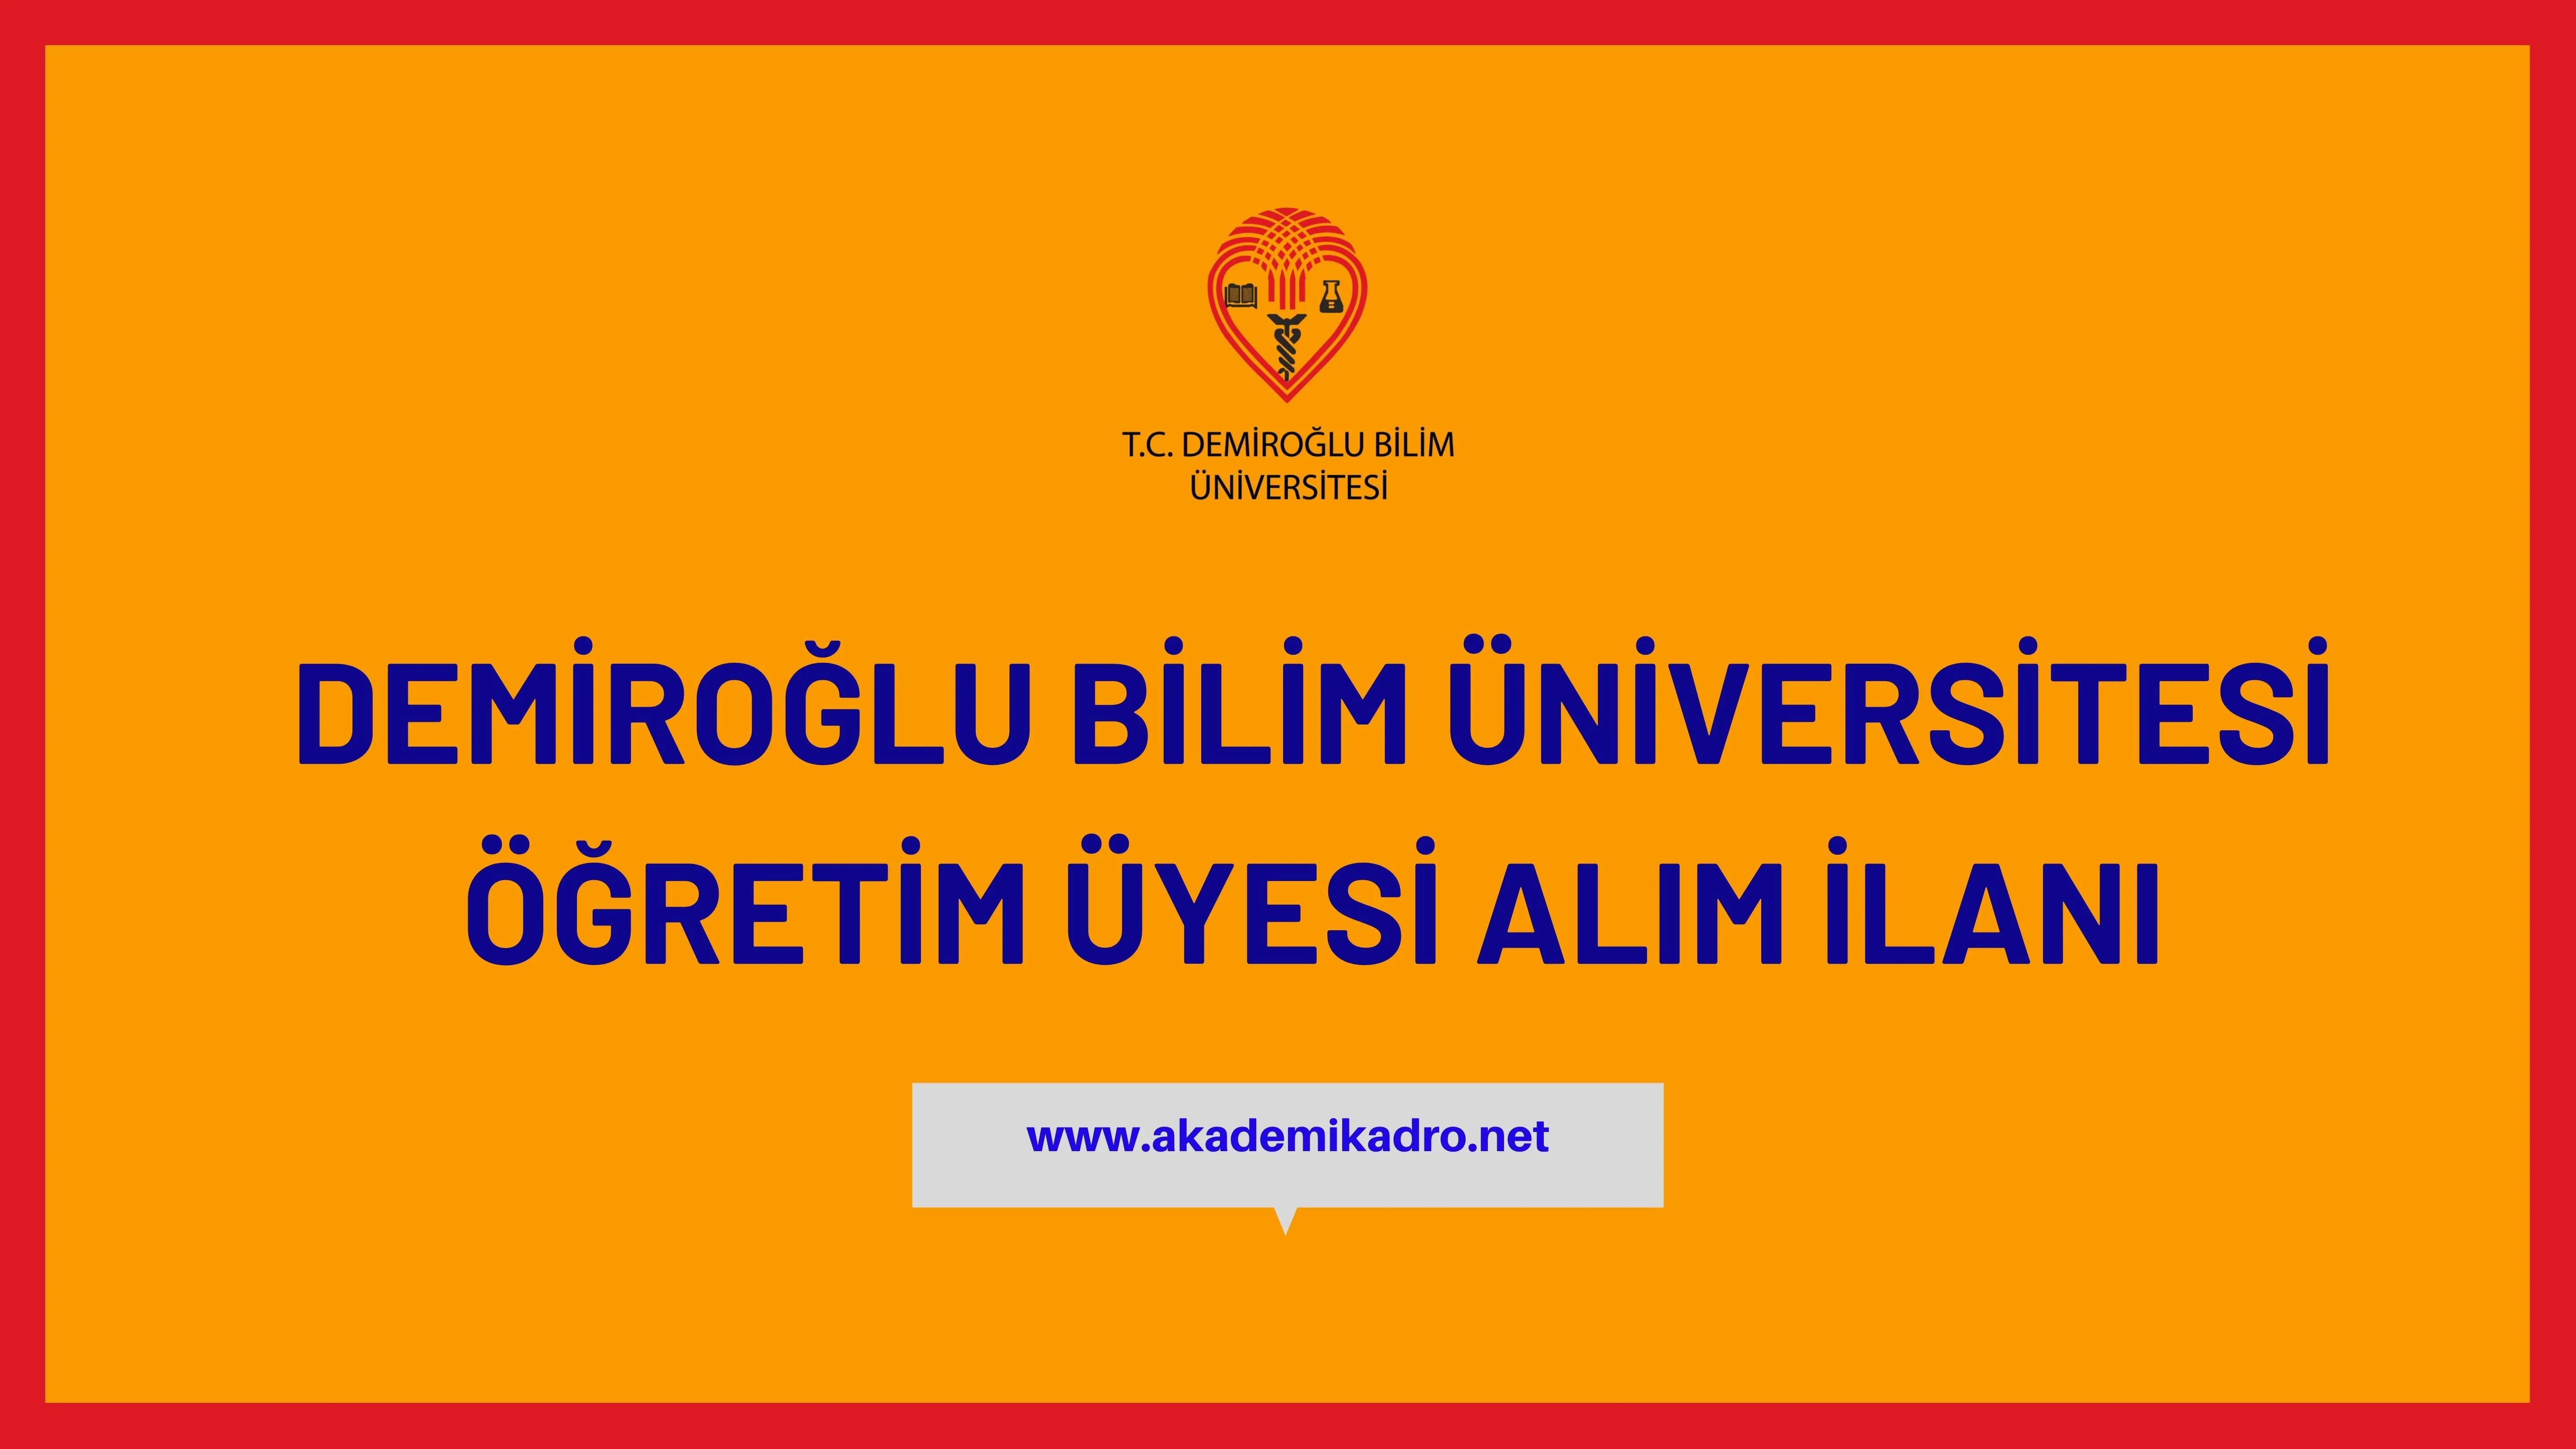 Demiroğlu Bilim Üniversitesi akademik personel alacak.